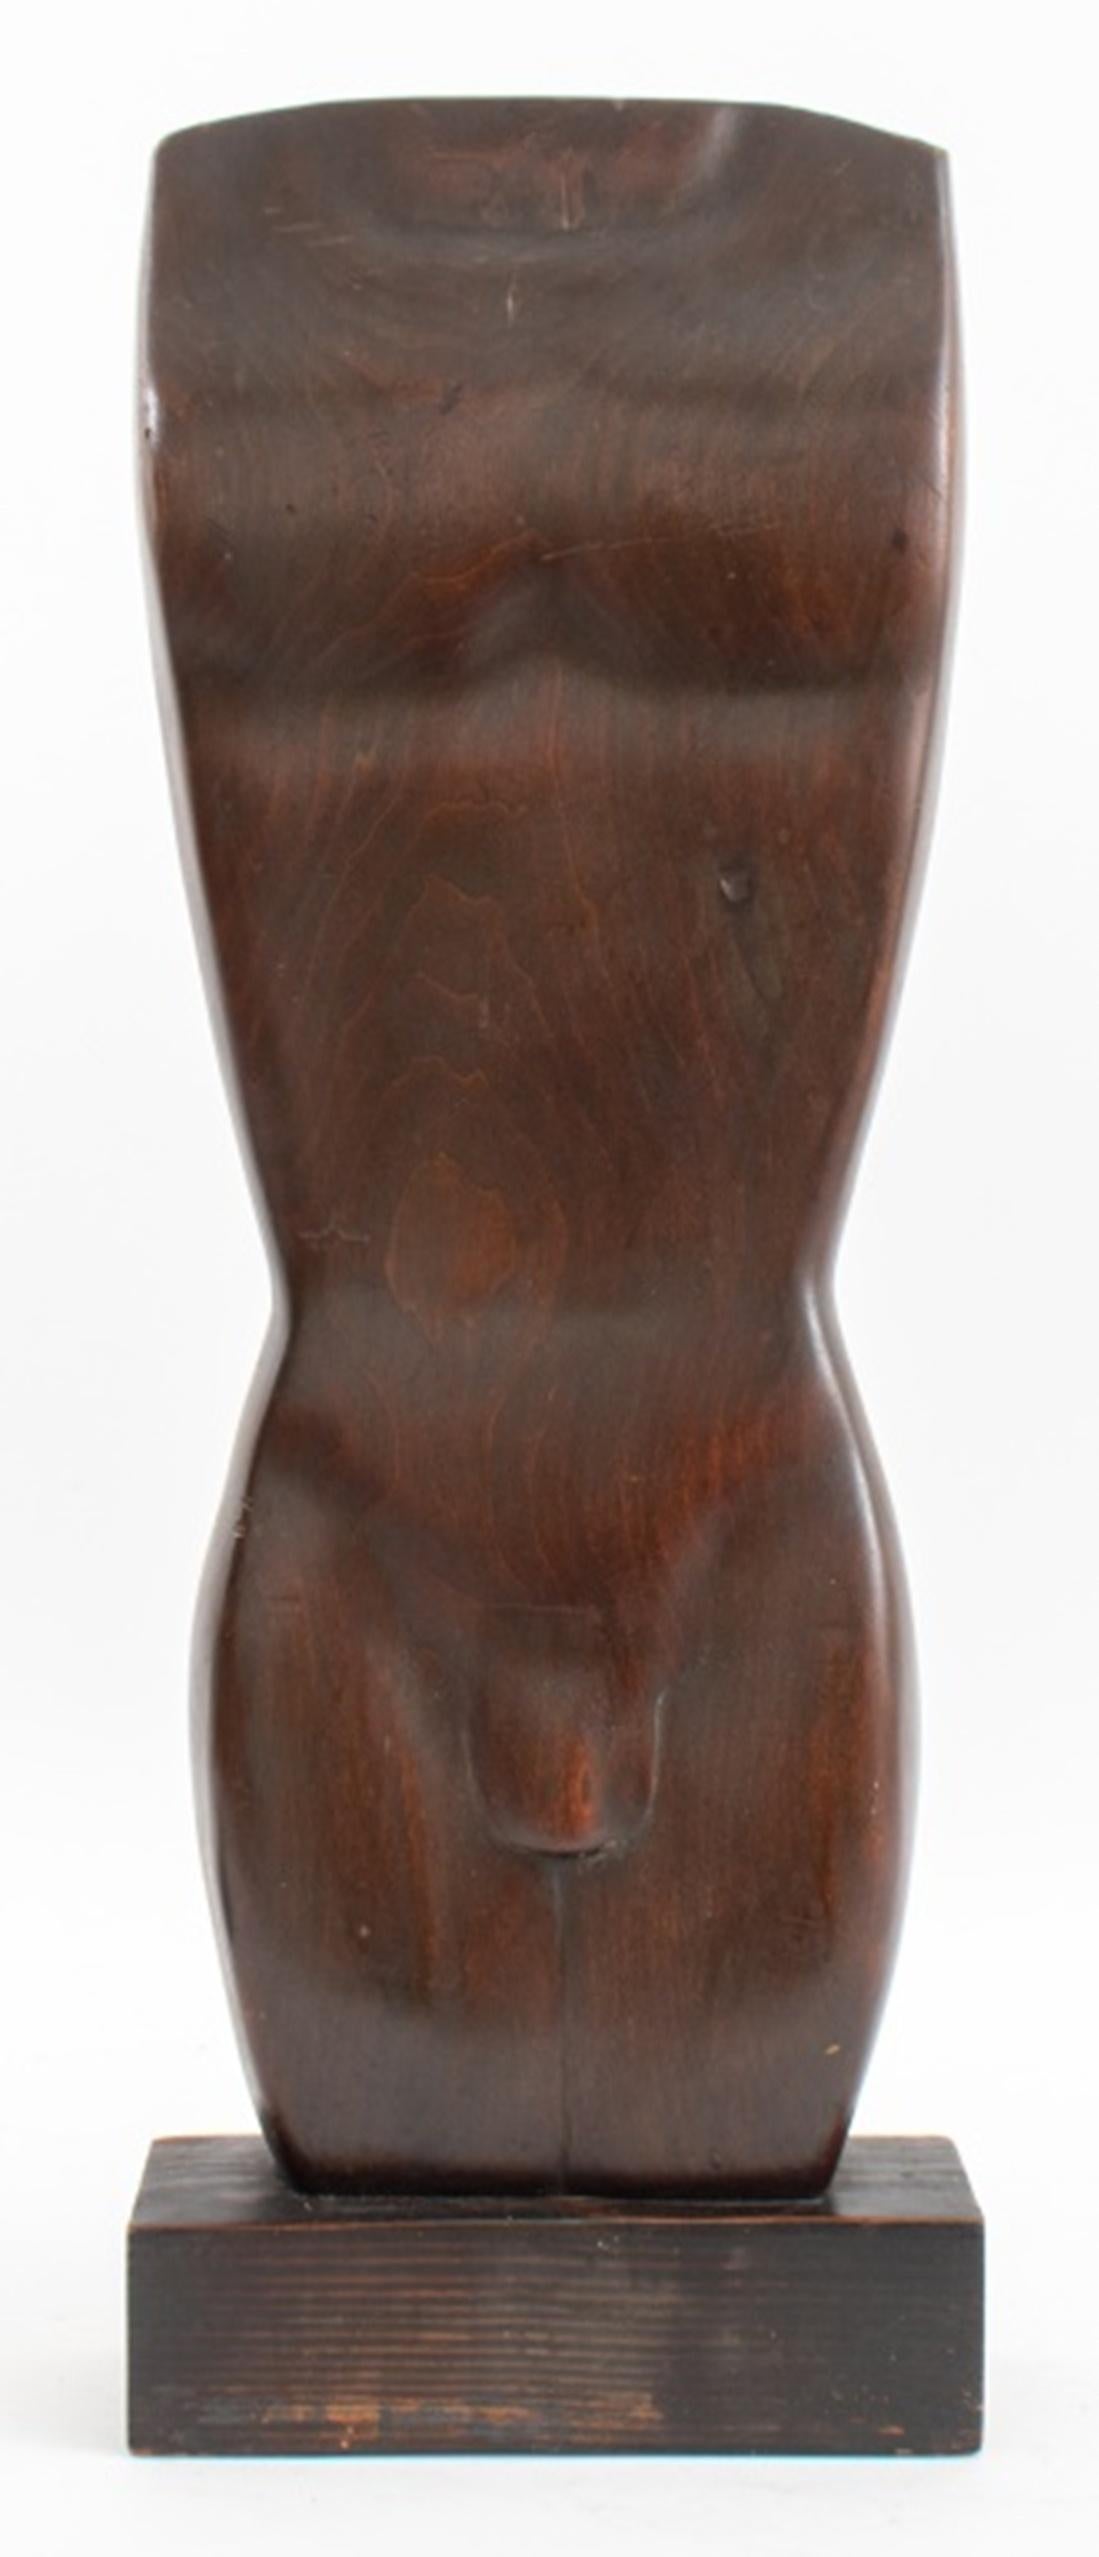 Sculpture moderniste d'un homme nu, avec les initiales I.L.A., en bois dur teinté.

Dimensions : 25